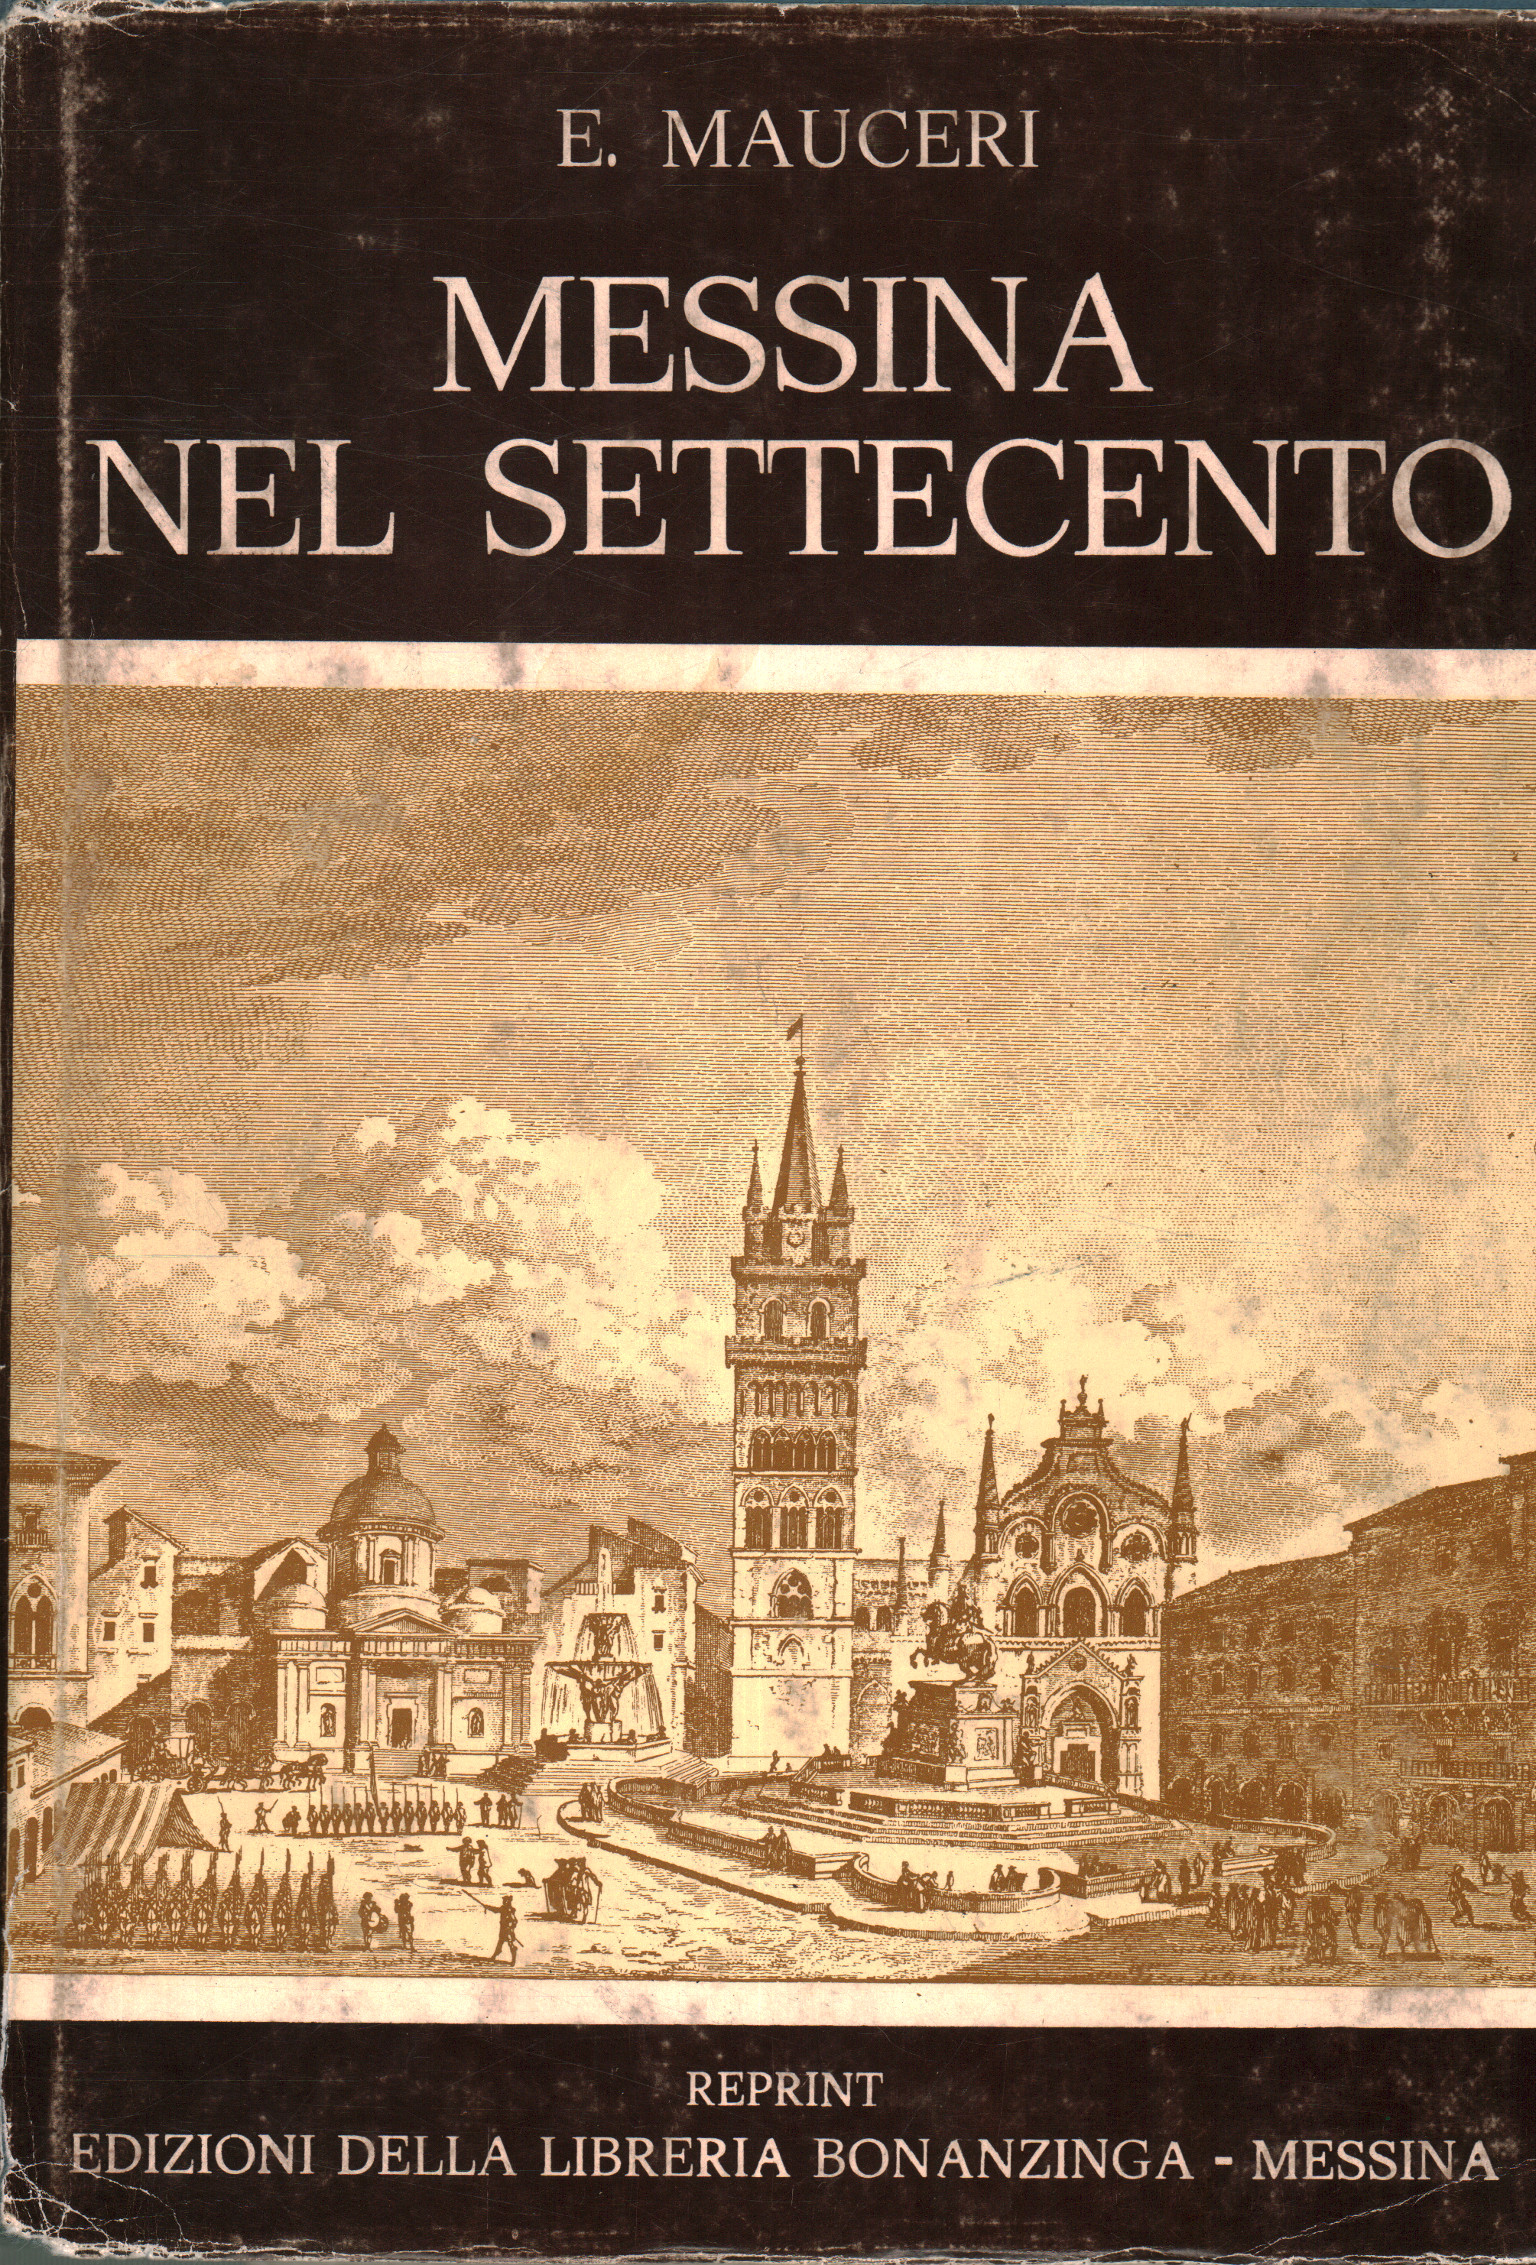 Messina im 18. Jahrhundert, E. Mauceri